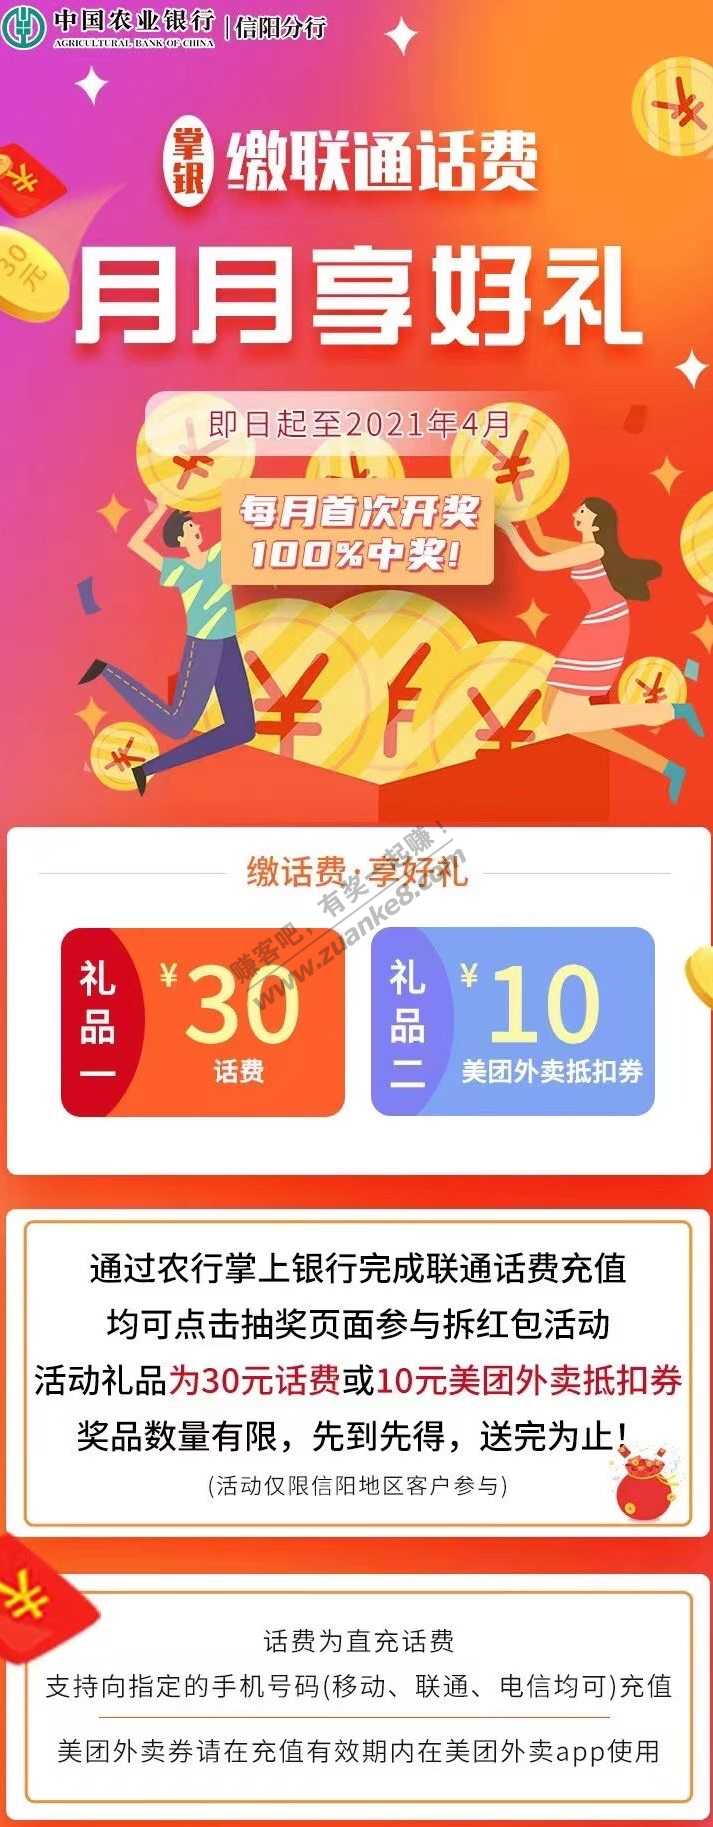 信阳农行-缴费中30话费或者10美团外卖券-惠小助(52huixz.com)